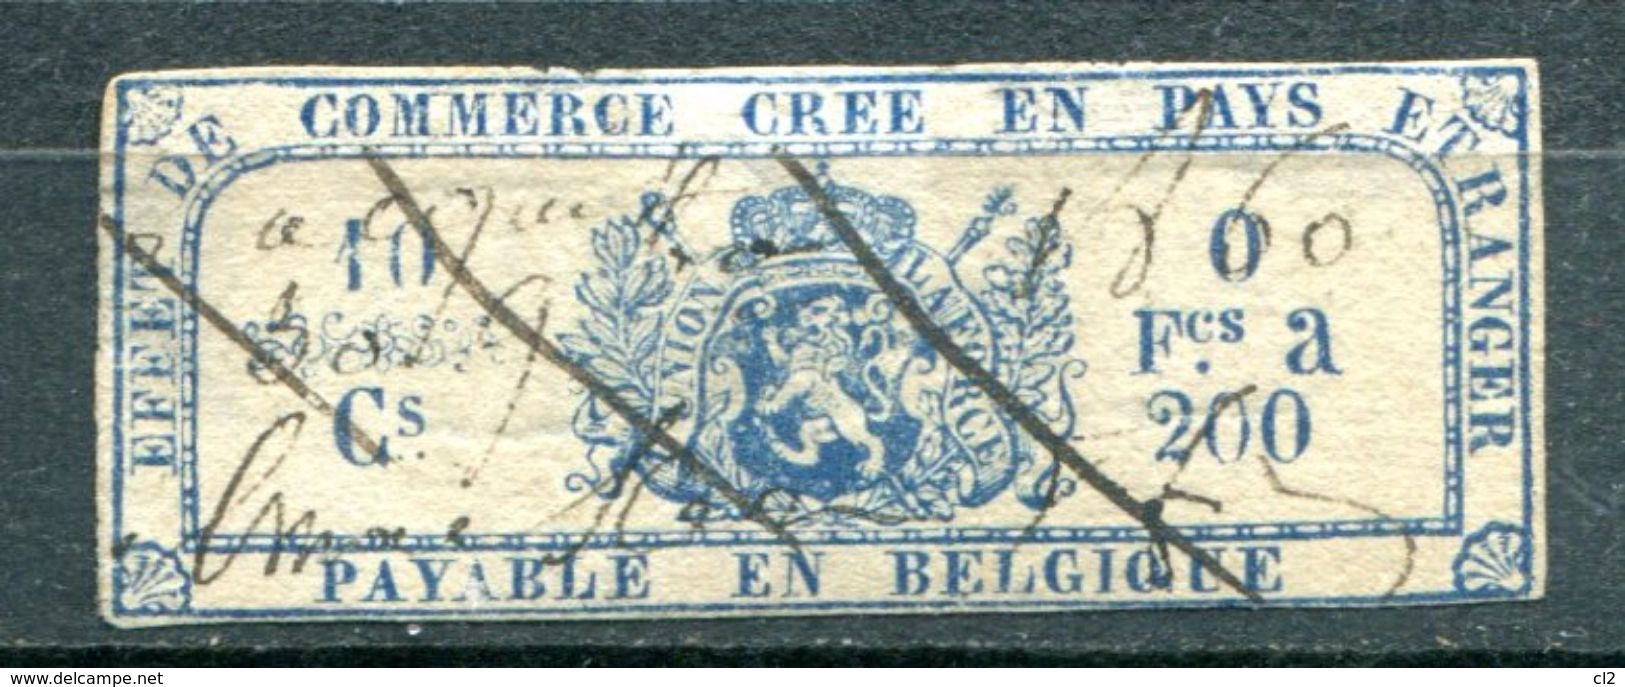 BELGIQUE - Fiscaux - Effet De Commerce Annulé En 1860 - Francobolli